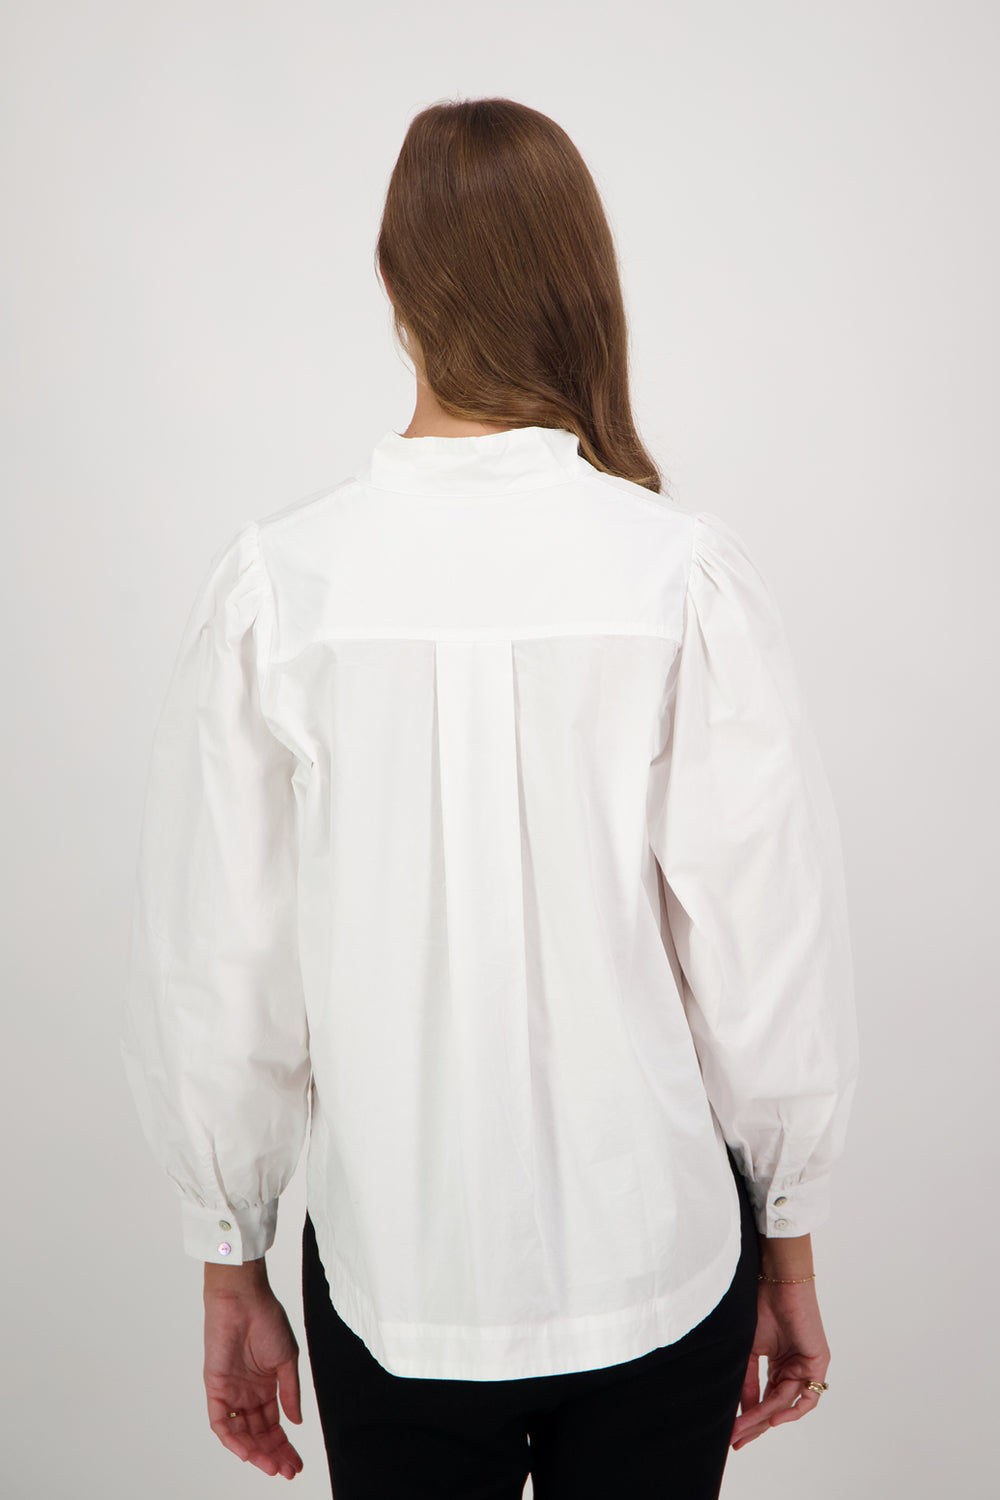 Briarwood Catherine Shirt - White